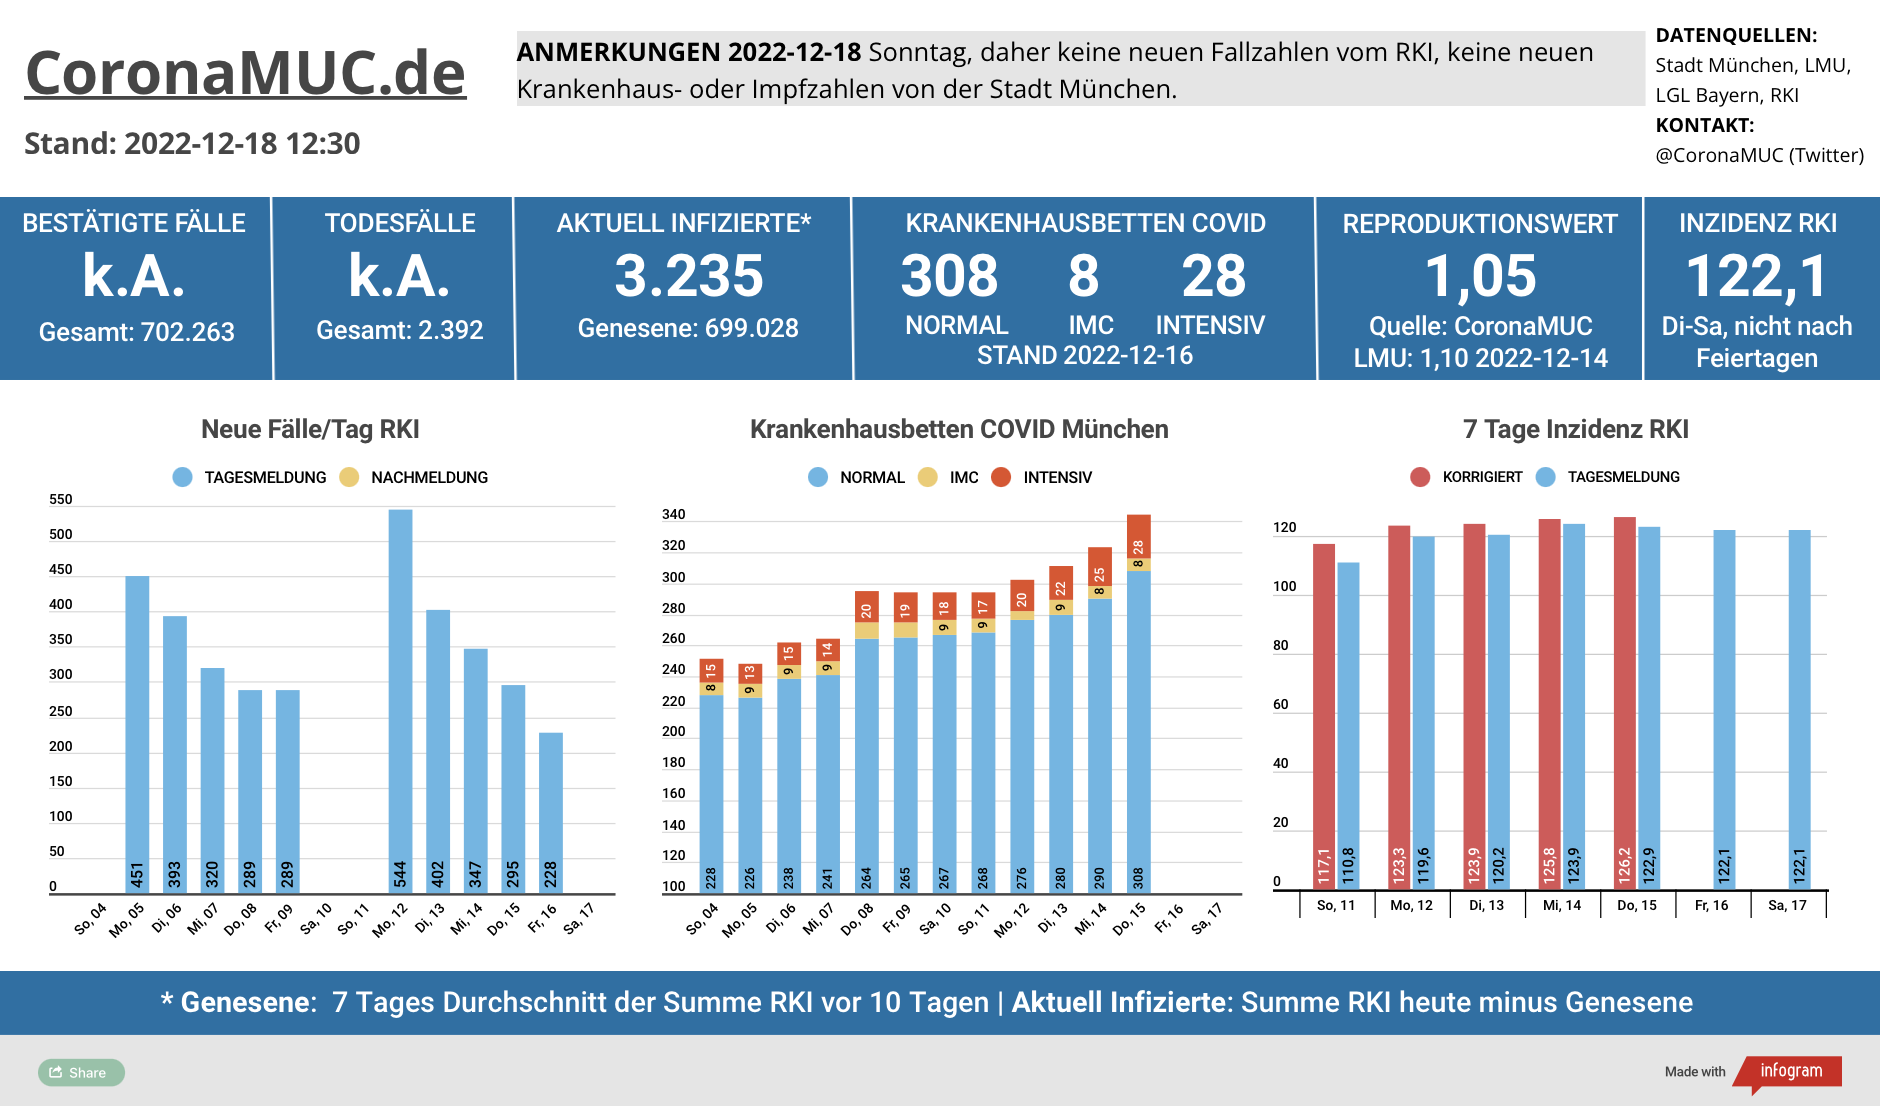 2022-12-18 Dashboard mit den Zahlen für München. Drei Balkengrafiken. Erste zeigt Neu- und Nachmeldungen, im Vergleich zur Vorwoche sind die Zahlen höher, der R(t) Wert sinkt ein wenig auf 1,05. Zweite zeigt Krankenbetten, die weiter steigen. Dritte zeigt Inzidenz, die seit 6 Tagen über 120 liegt.